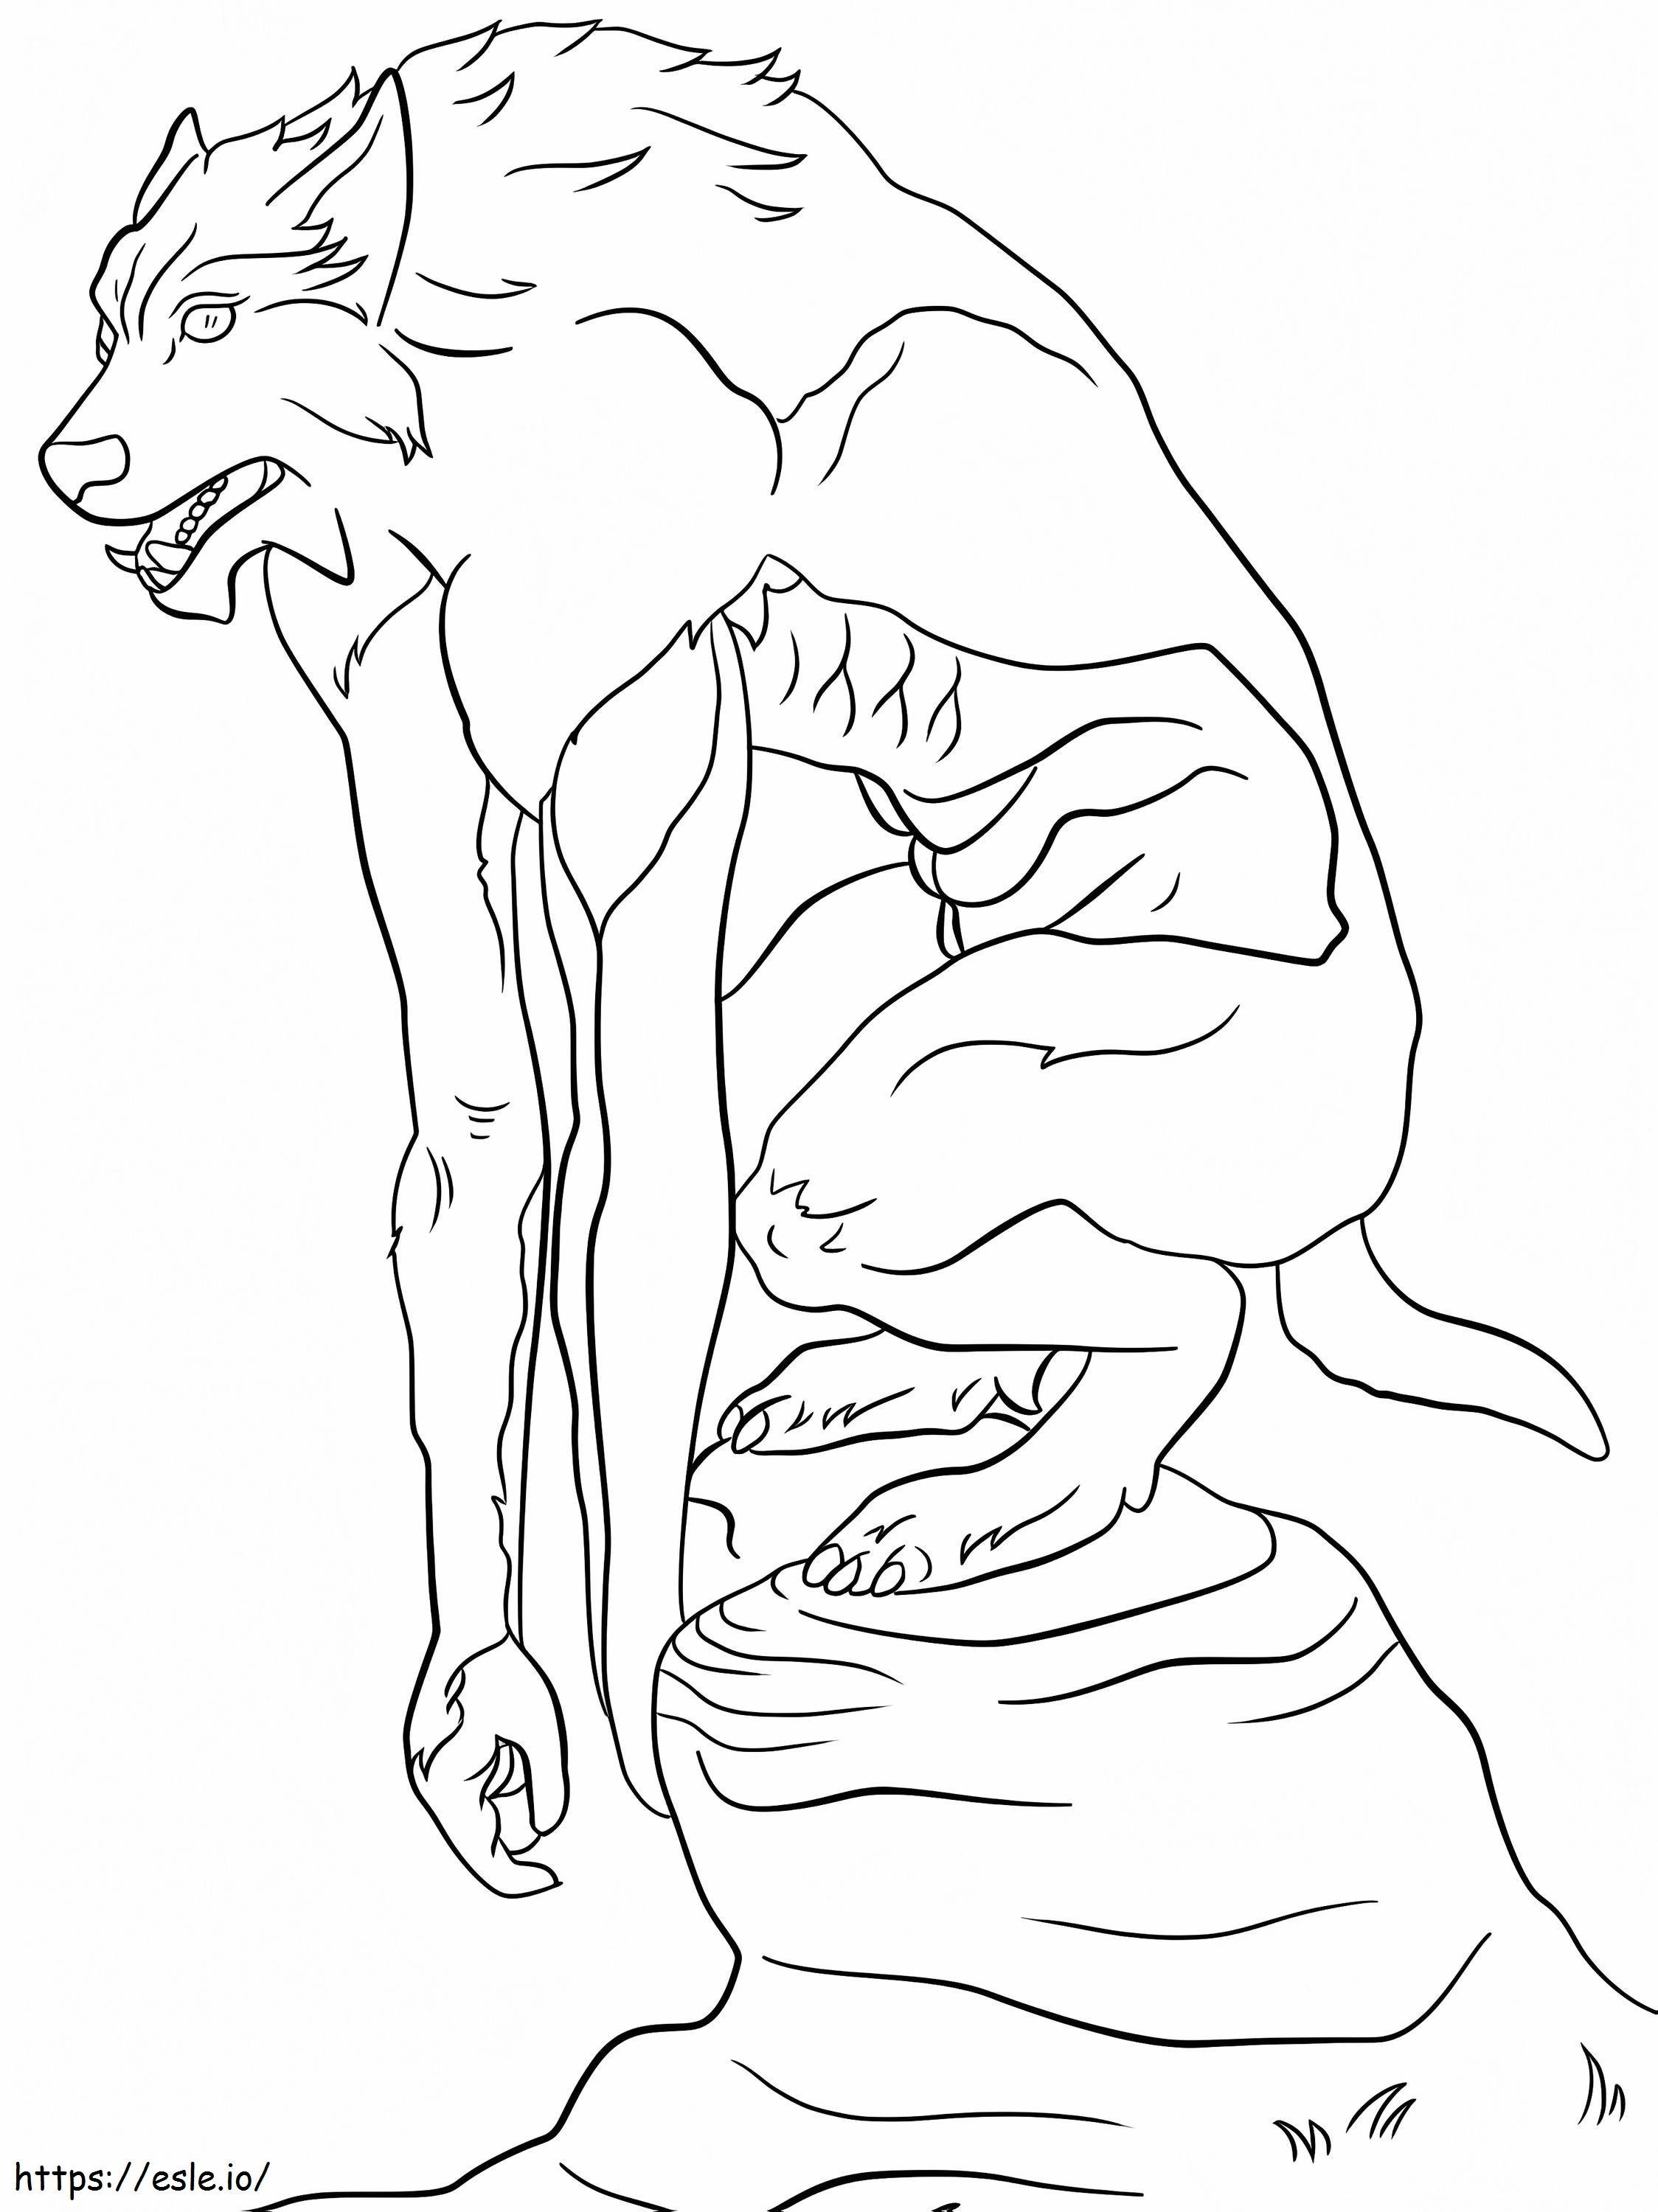 Halloween-Werwolf-Malseite ausmalbilder